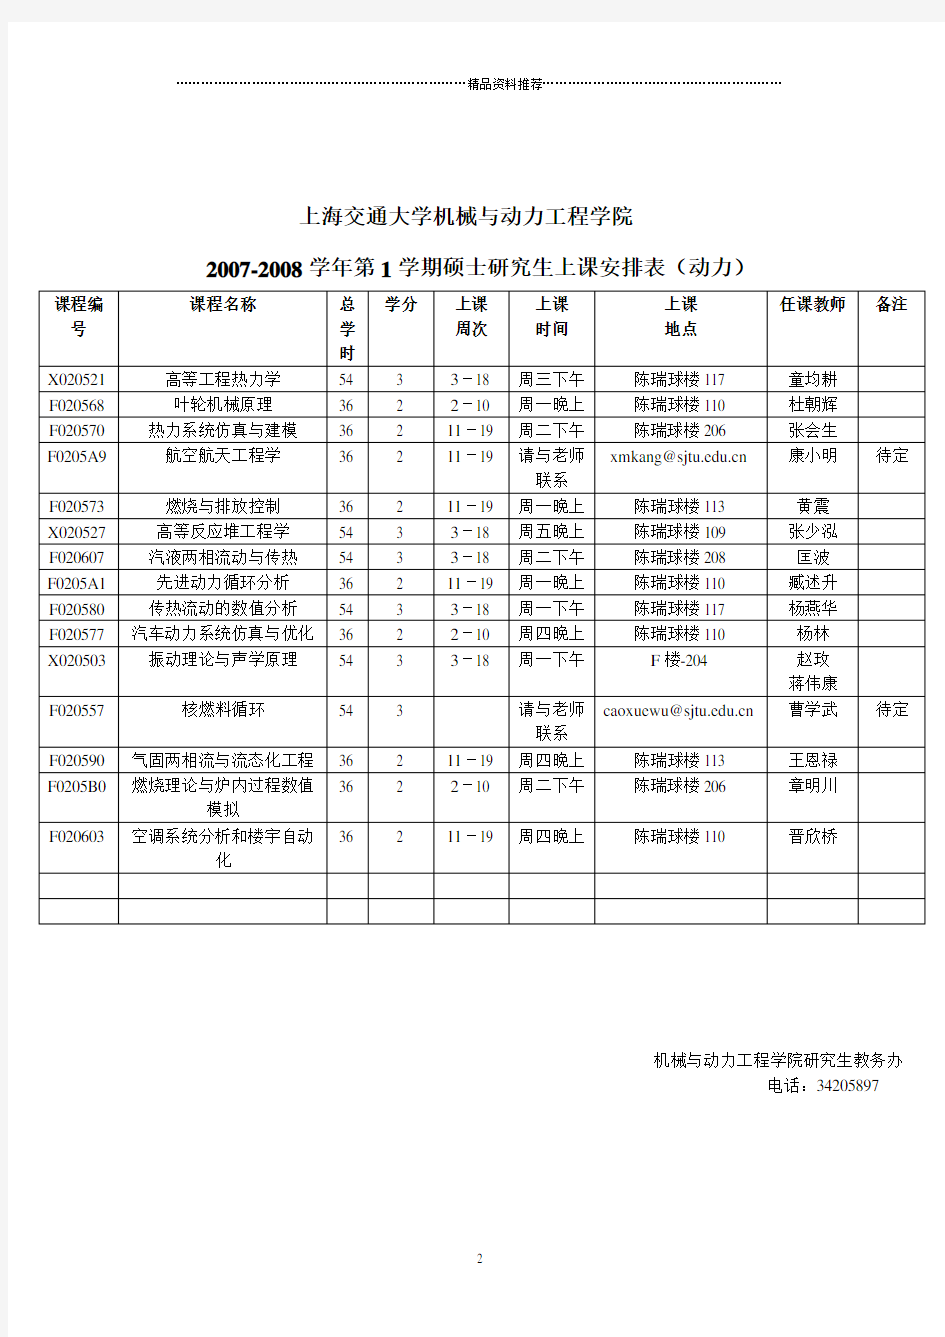 上海交通大学研究生教学安排和上课时间表